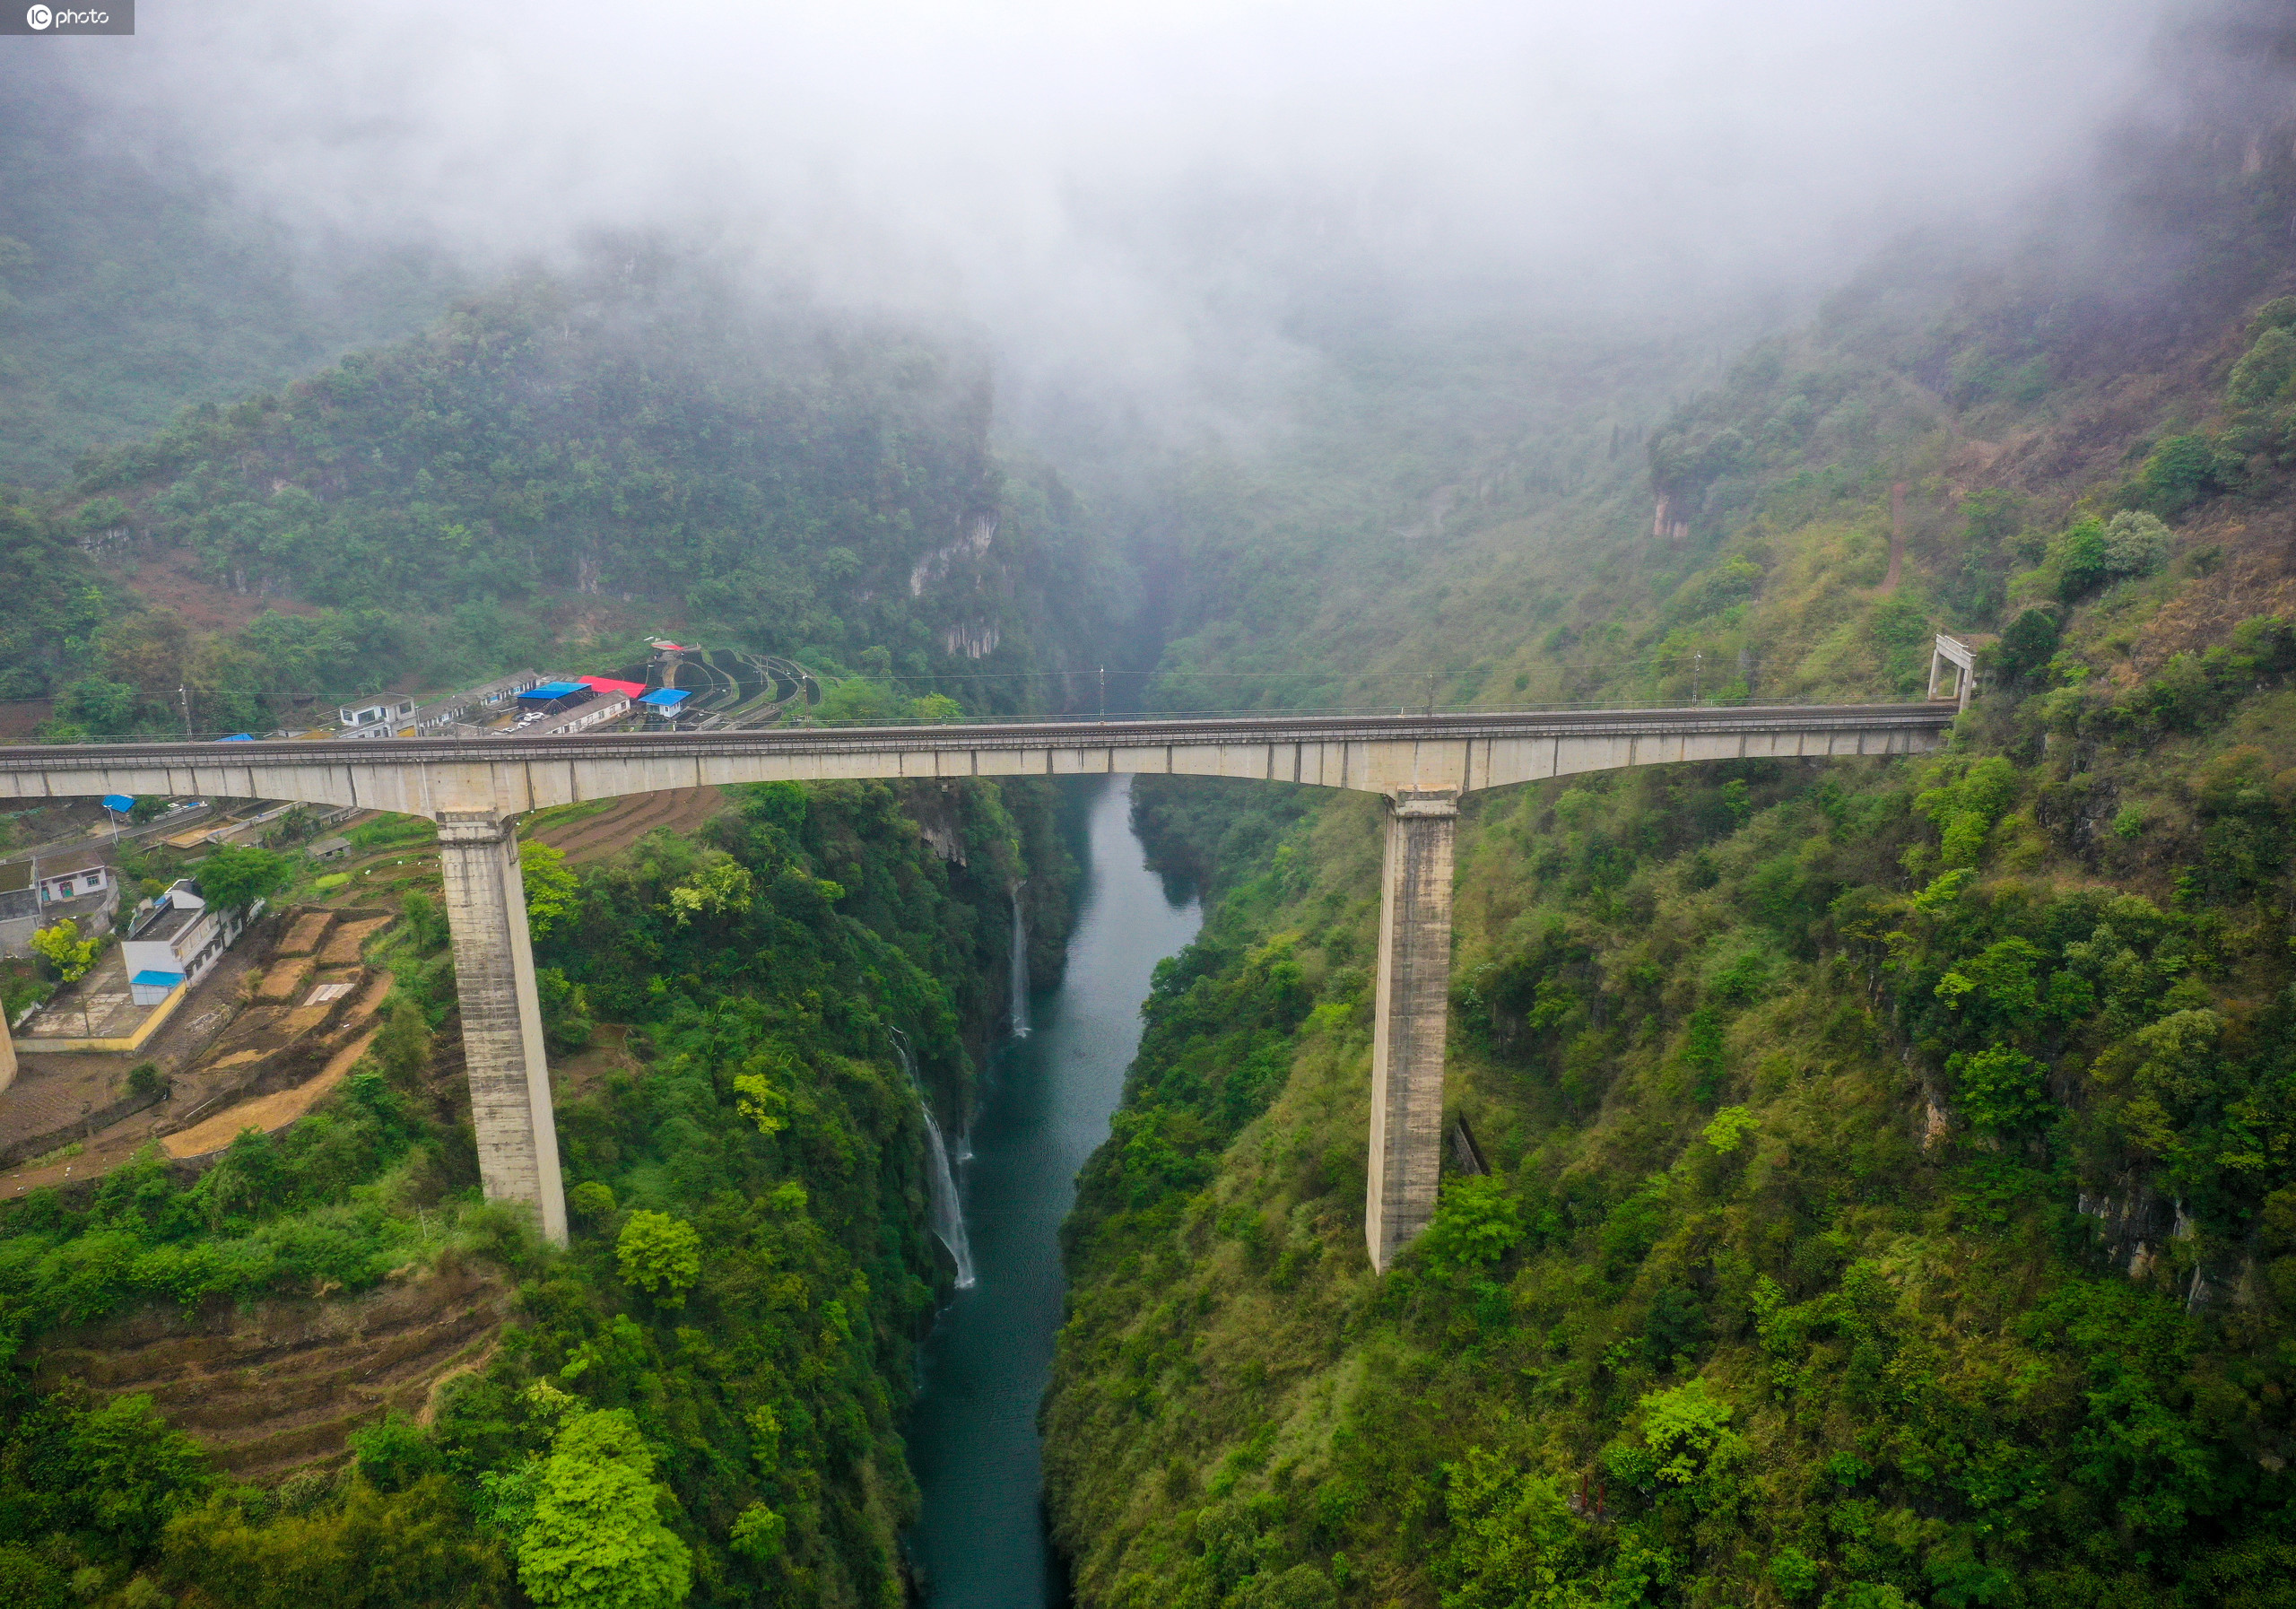 贵州深山峡谷现最惊险铁路桥02列车出云入岫横跨万丈深渊